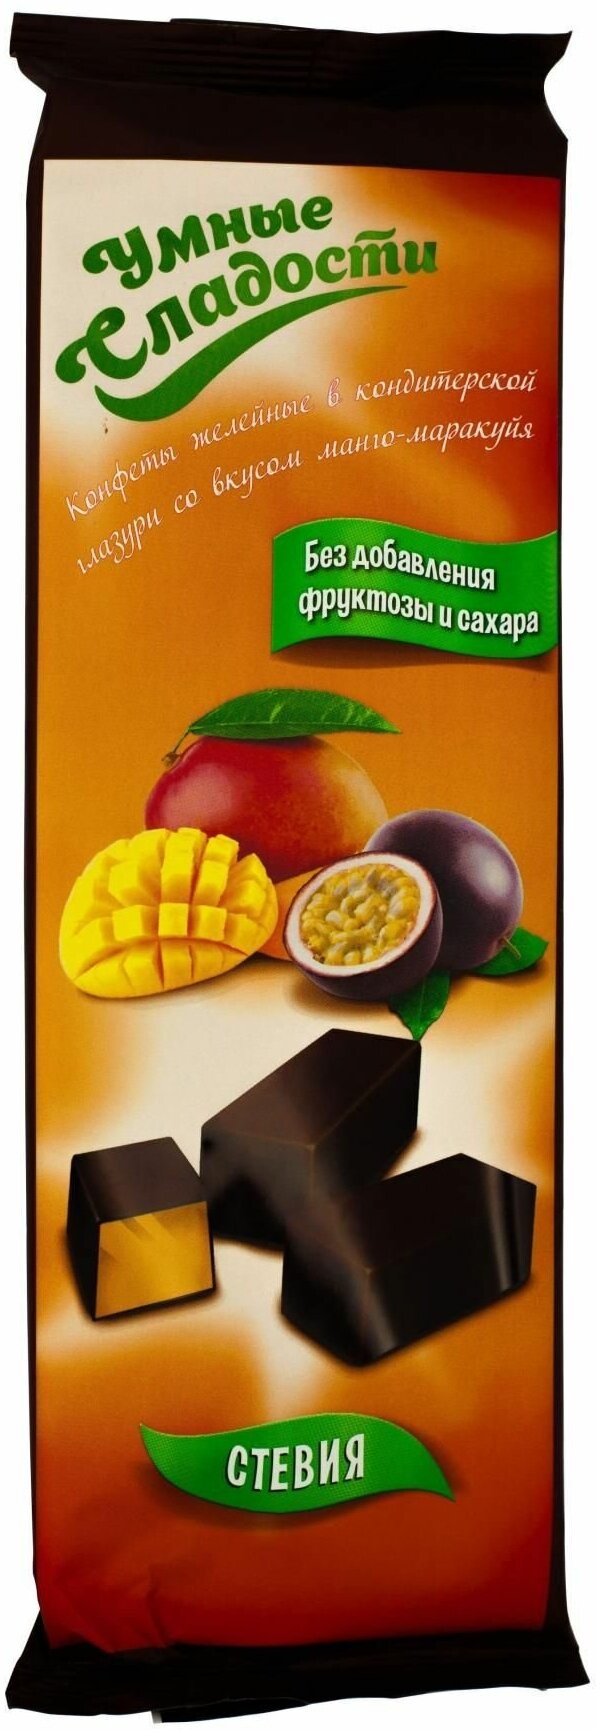 Конфеты Умные сладости, желейные, с манго и маракуйей, в кондитерской глазури, 105 г